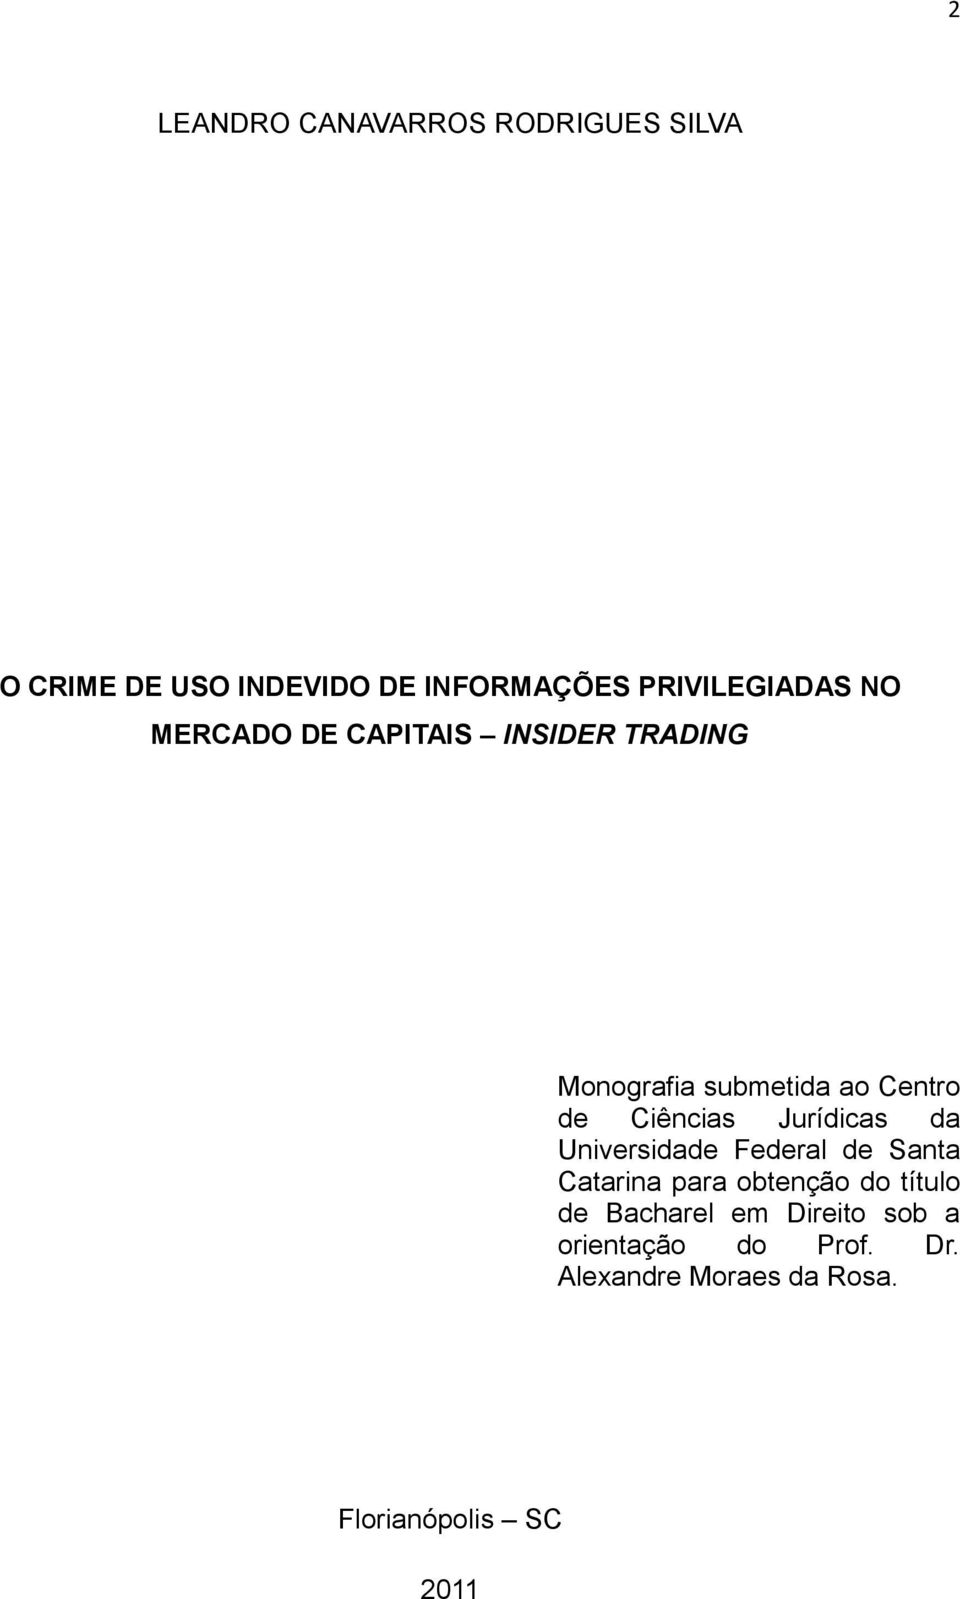 Ciências Jurídicas da Universidade Federal de Santa Catarina para obtenção do título